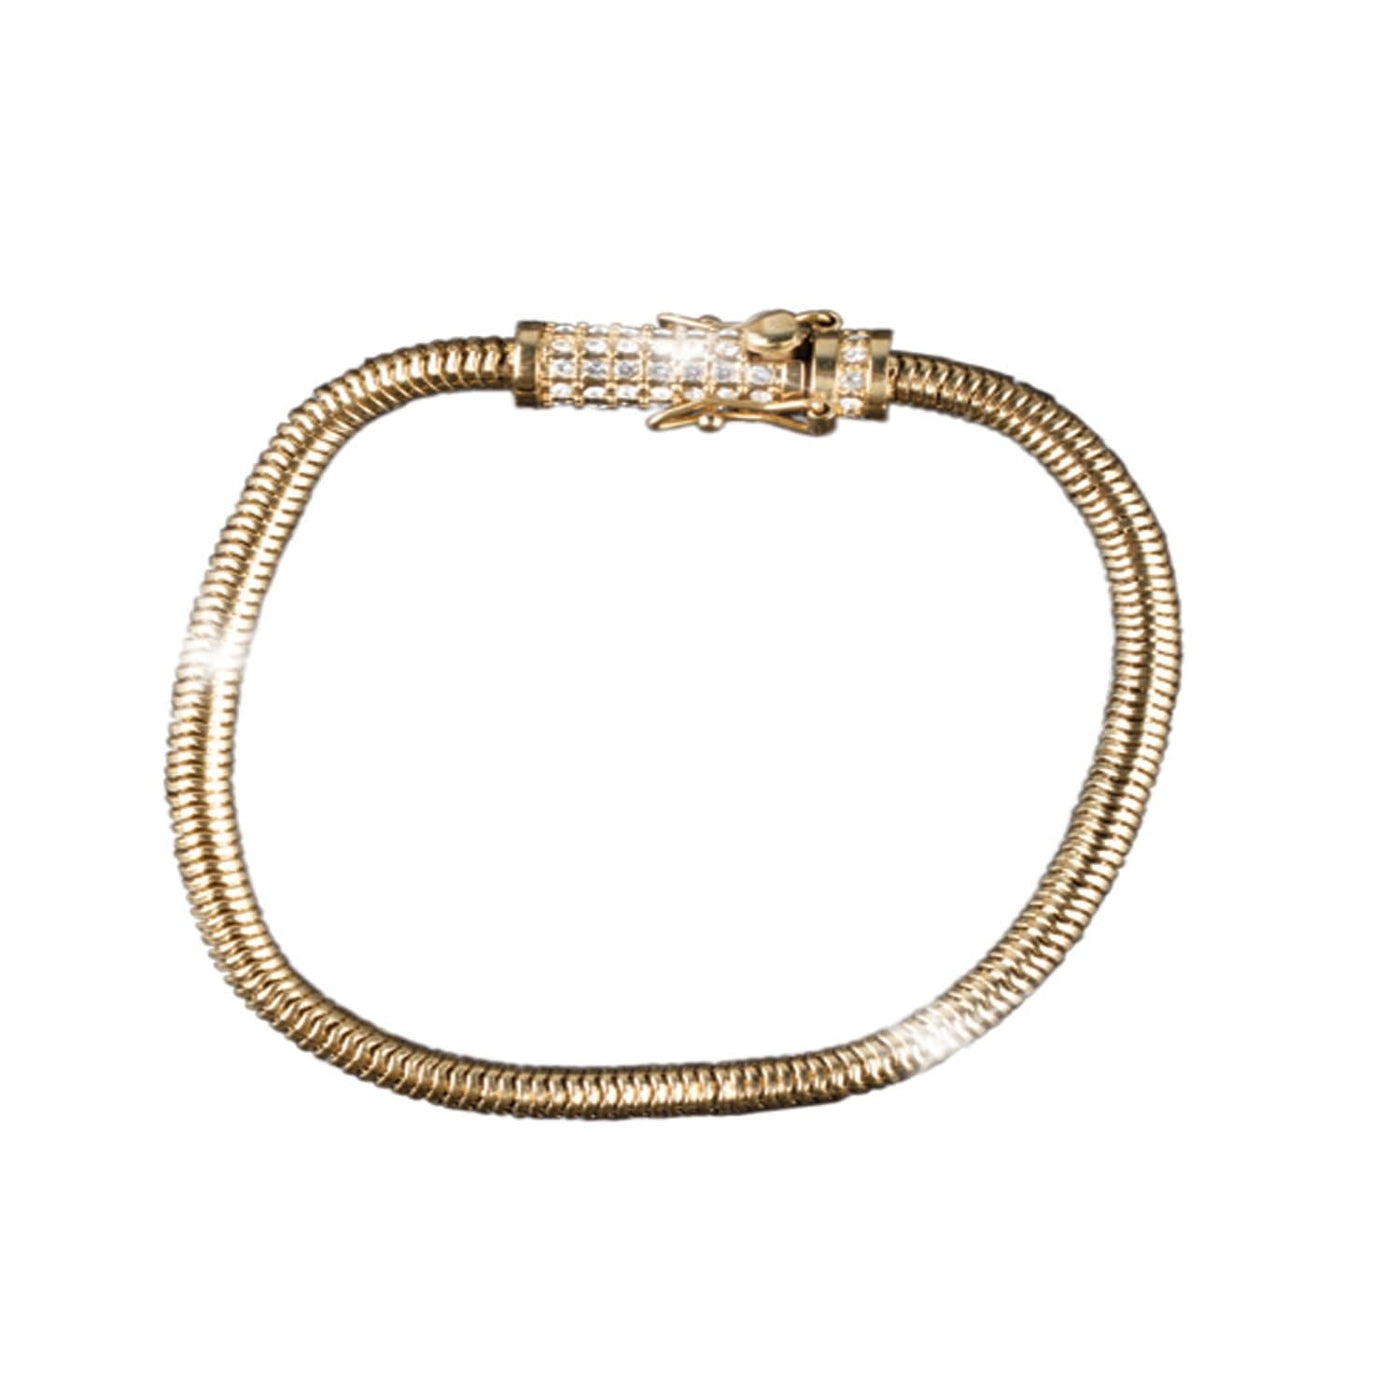 Daniel Steiger Golden Snake Chain Bracelet